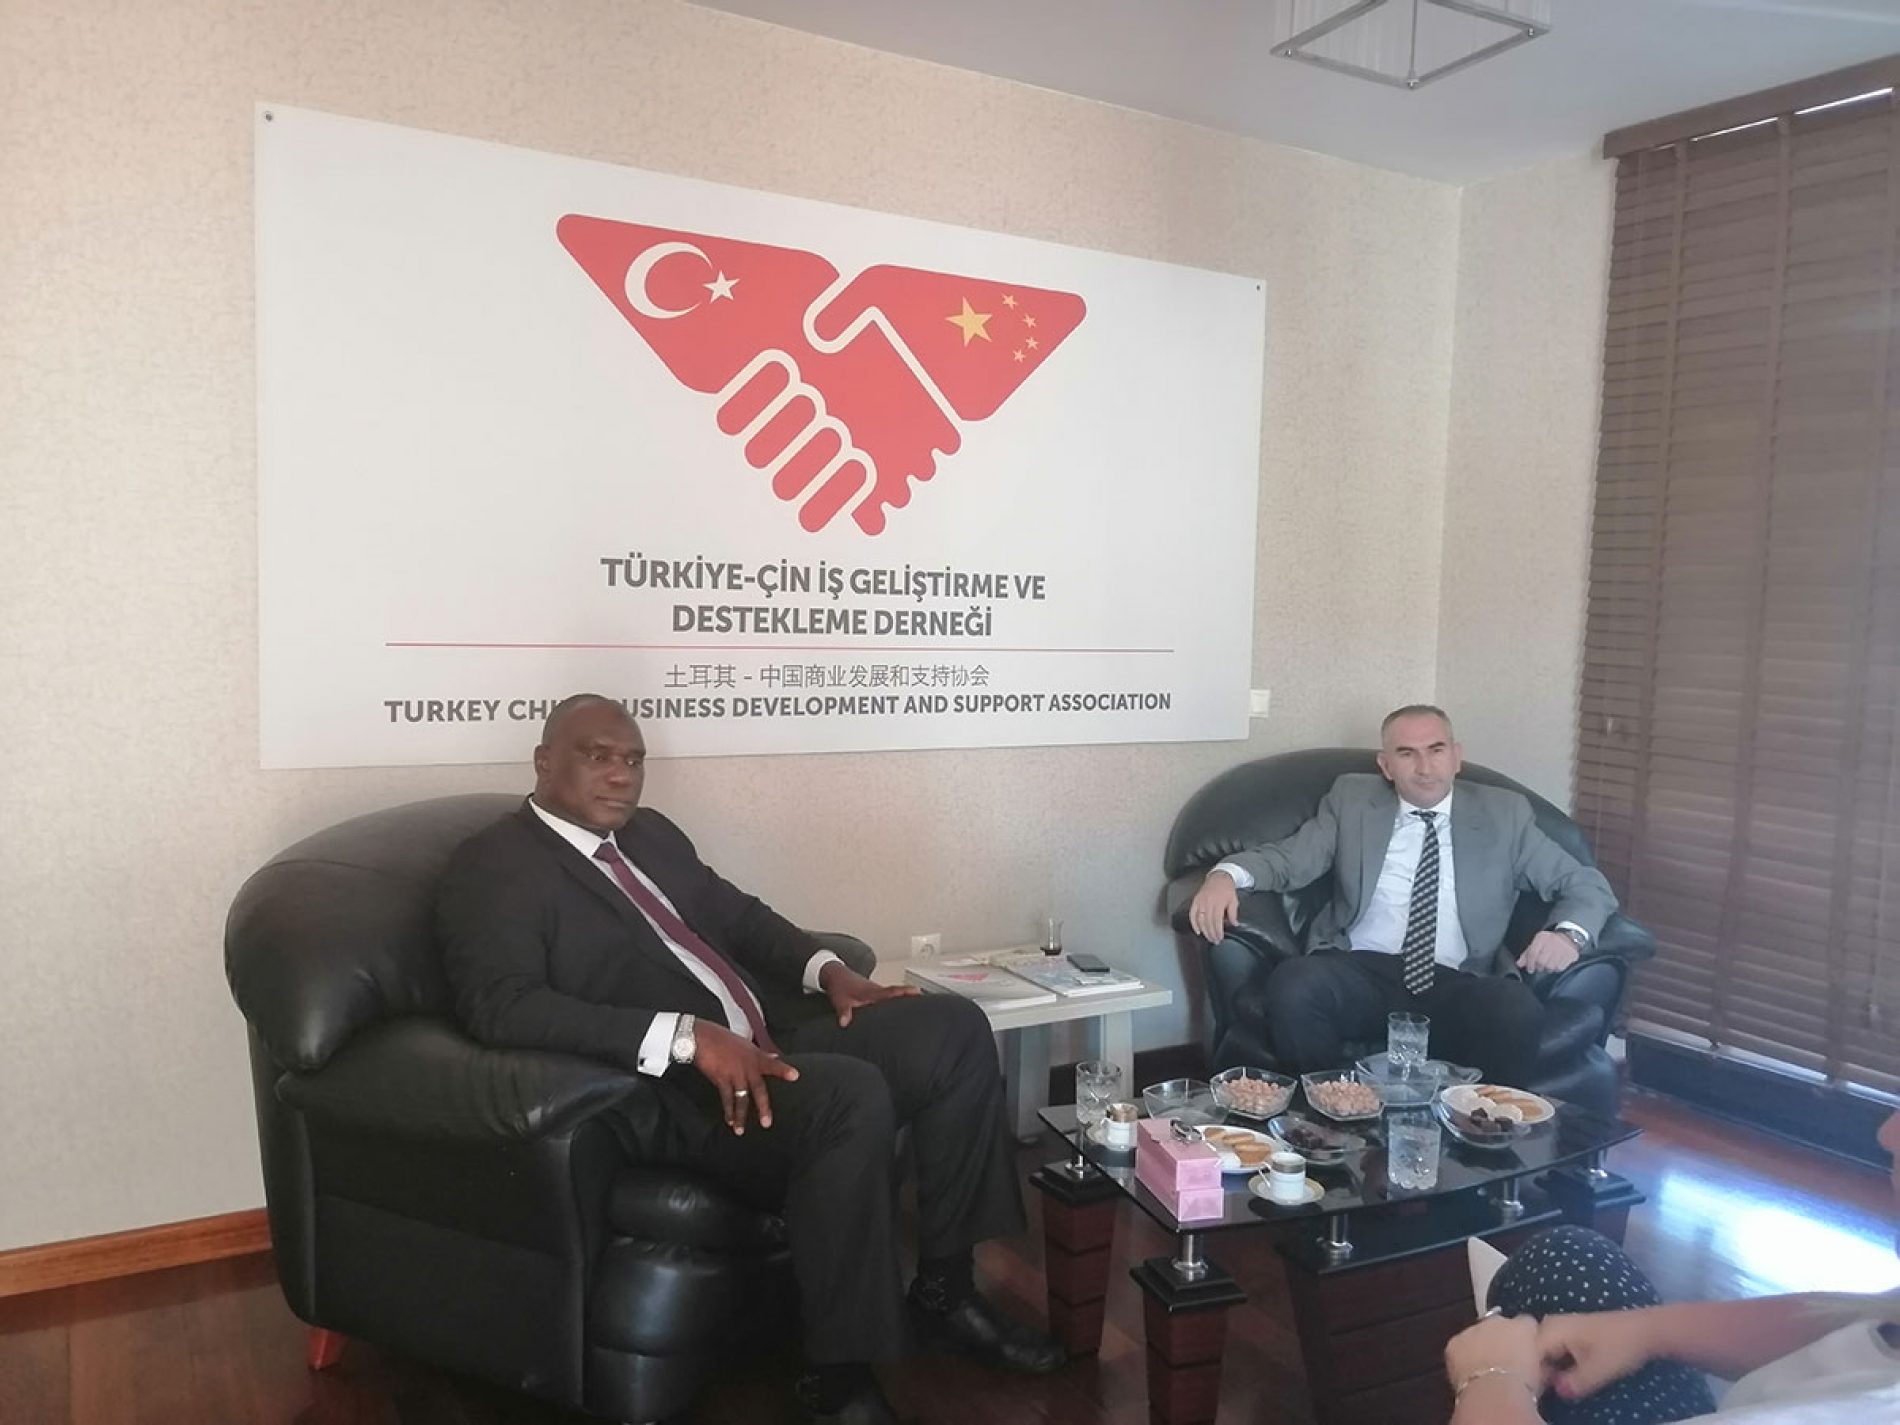 冈比亚大使SERING MODOU NJIE在土耳其-中国商业发展和支持协会总部拜访了协会会长İHSAN BEŞER